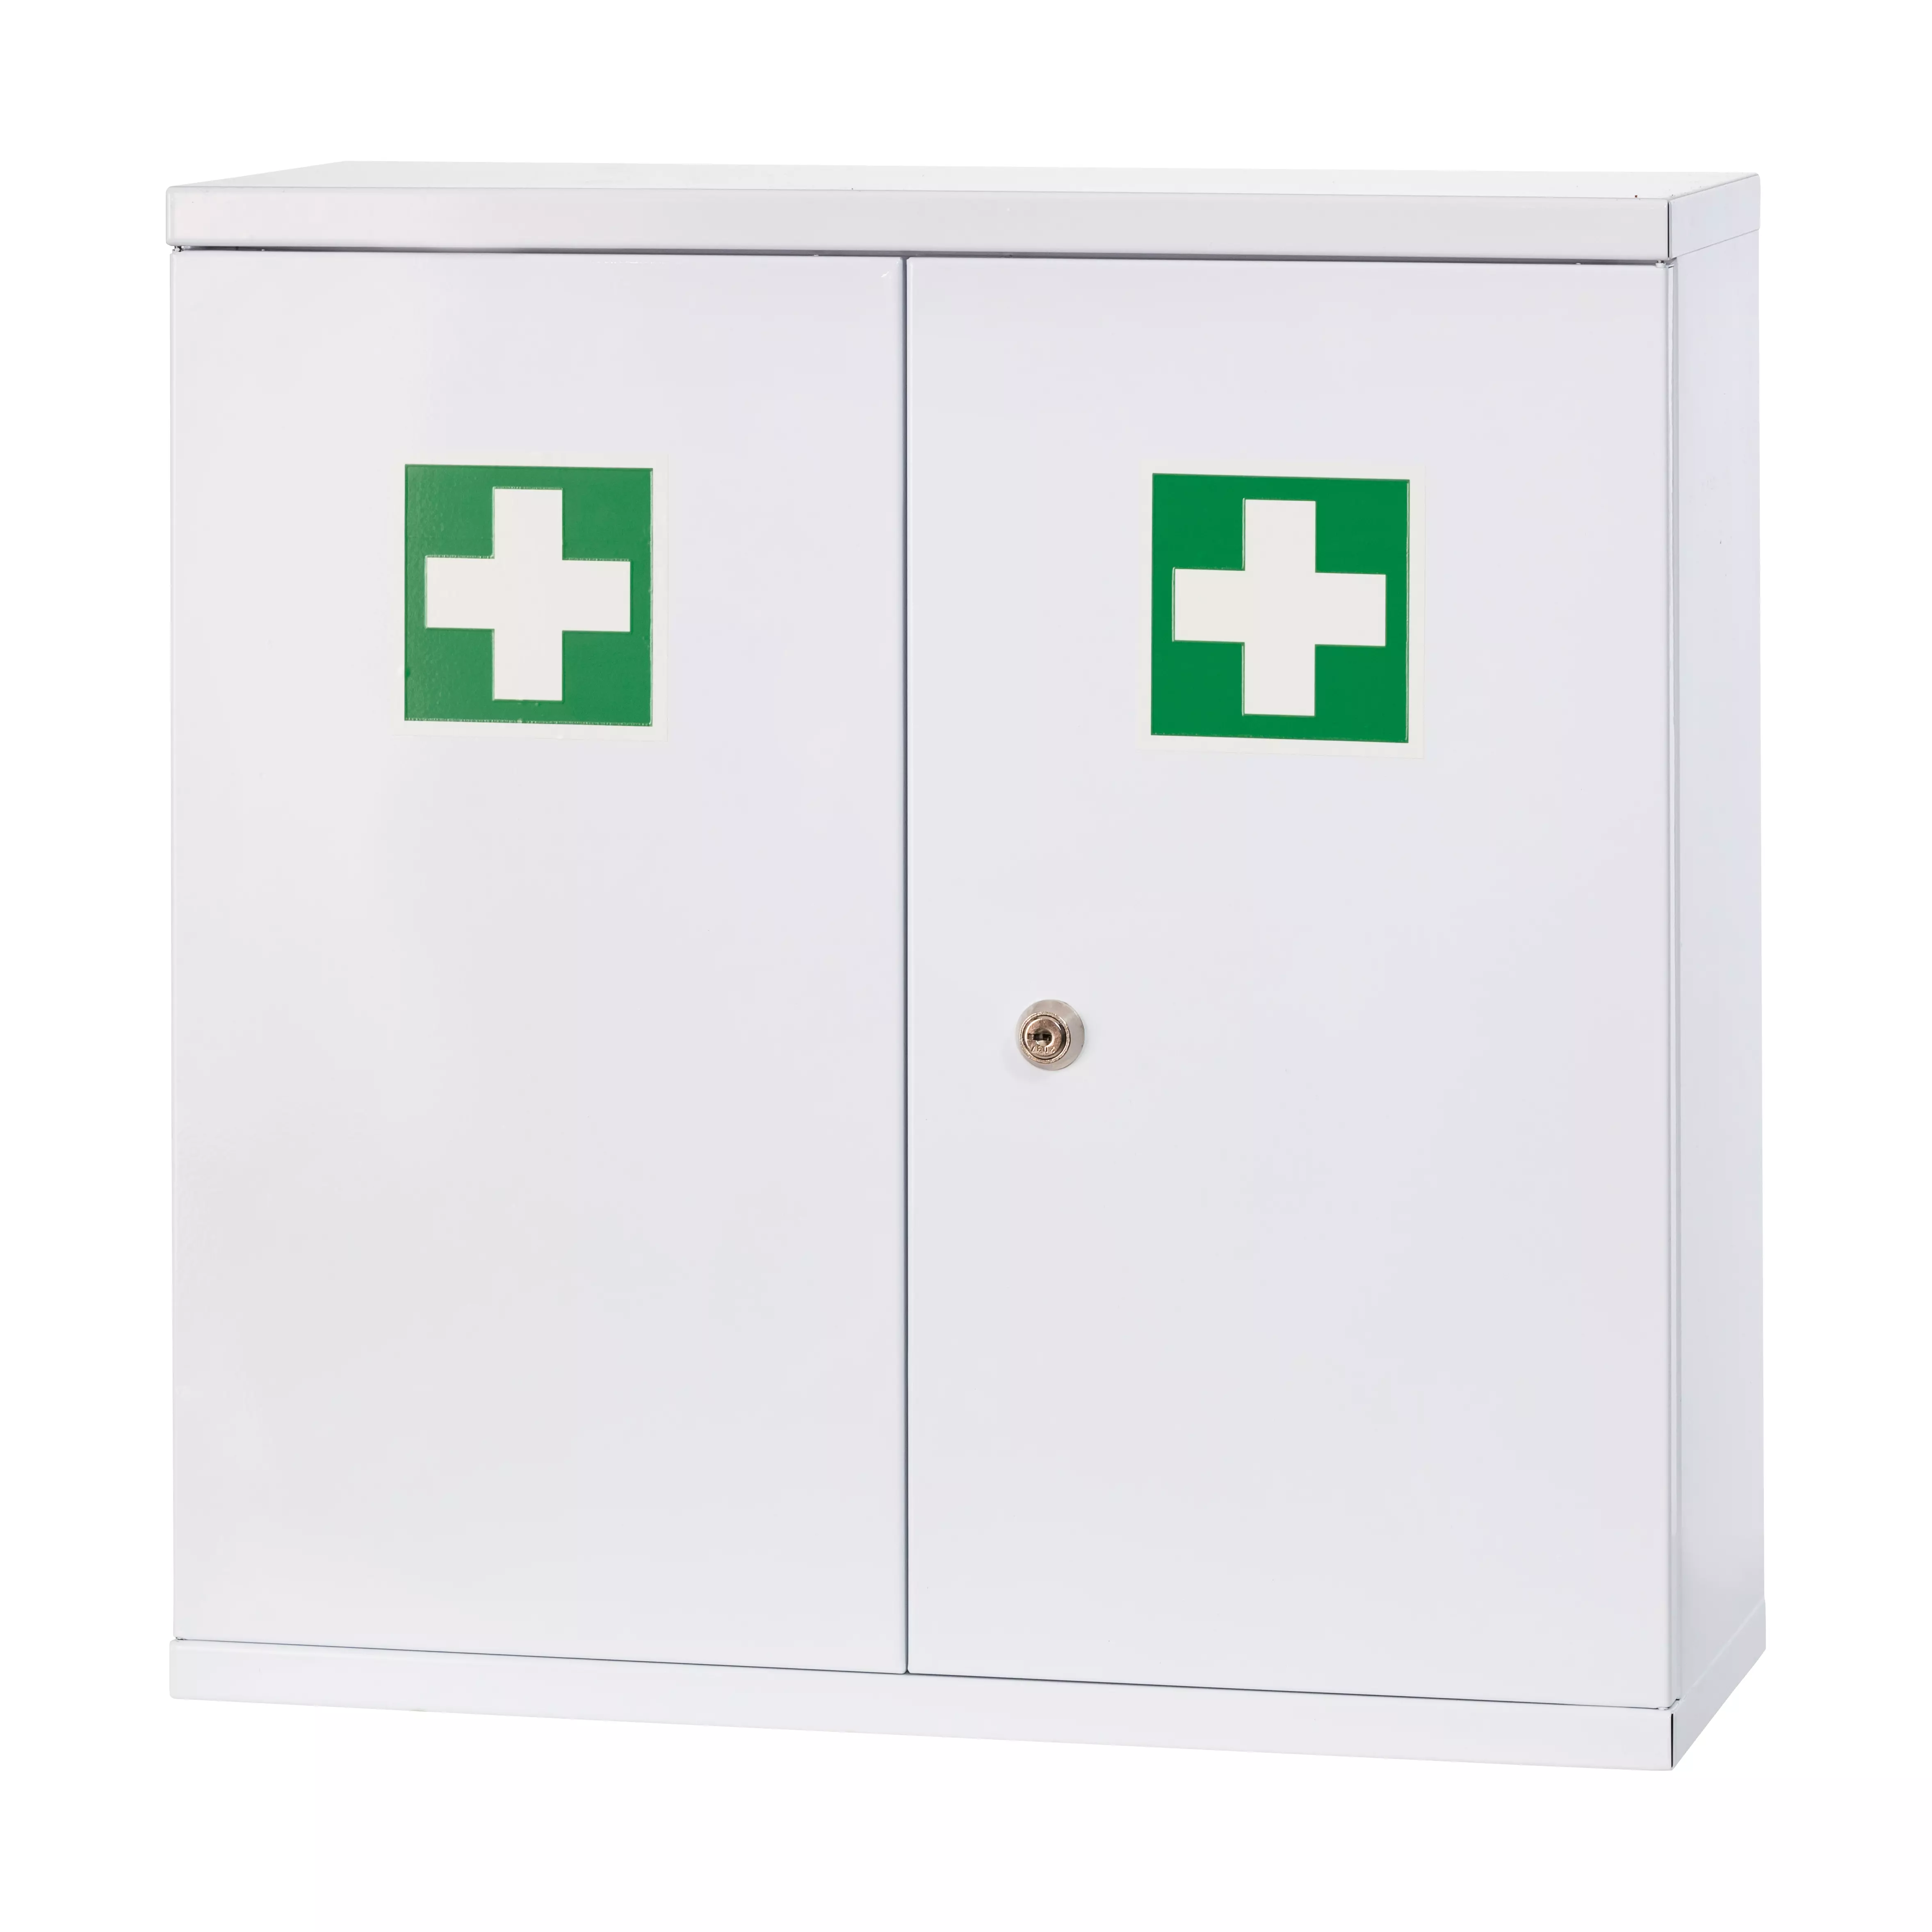 WERO DuoDoor first-aid cabinet, empty